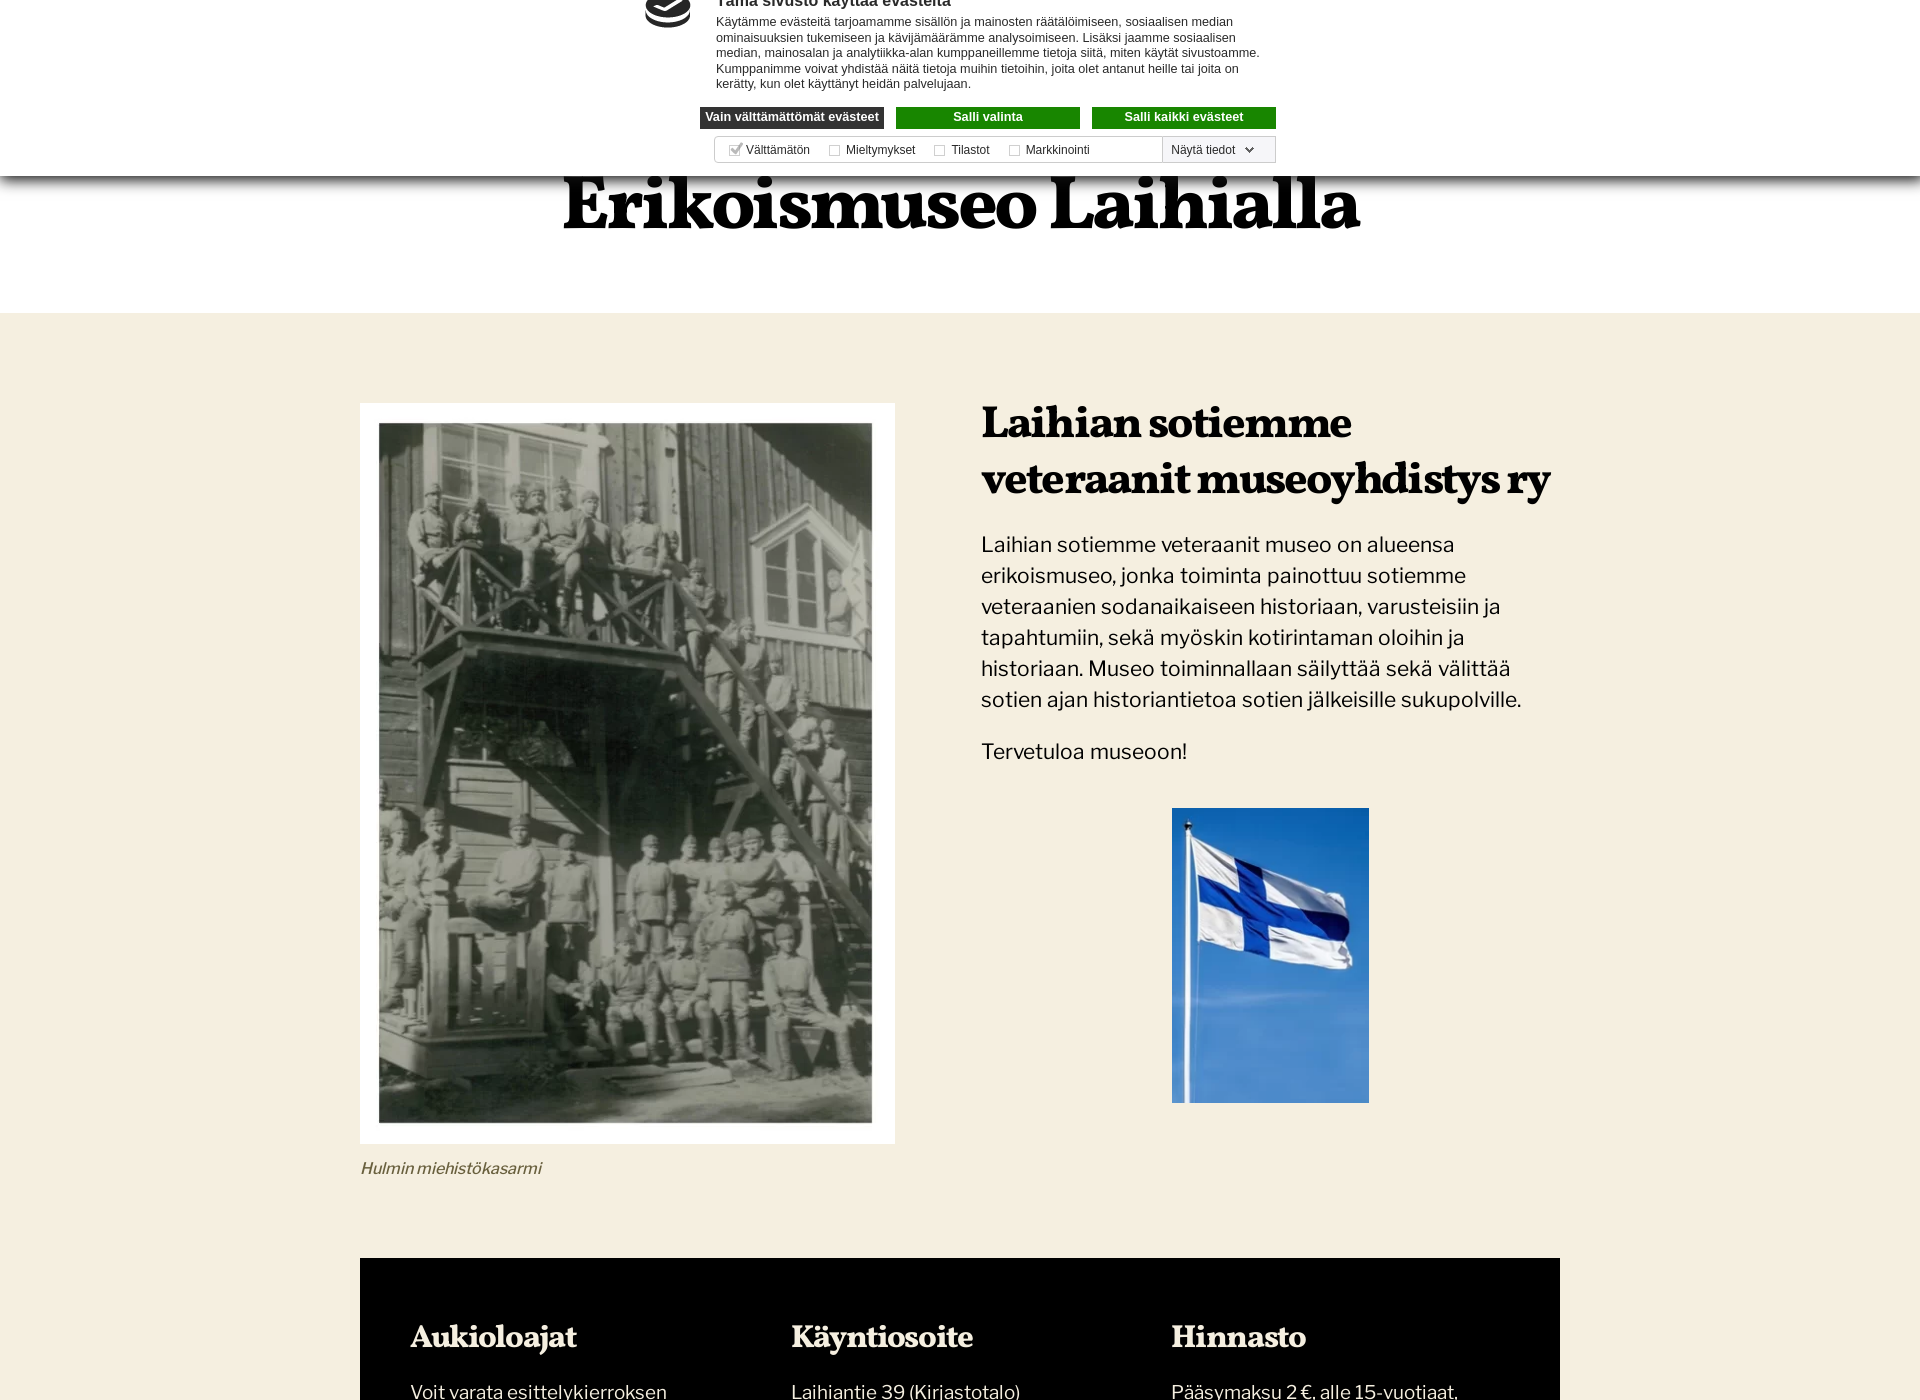 Näyttökuva laihianveteraanienmuseo.fi